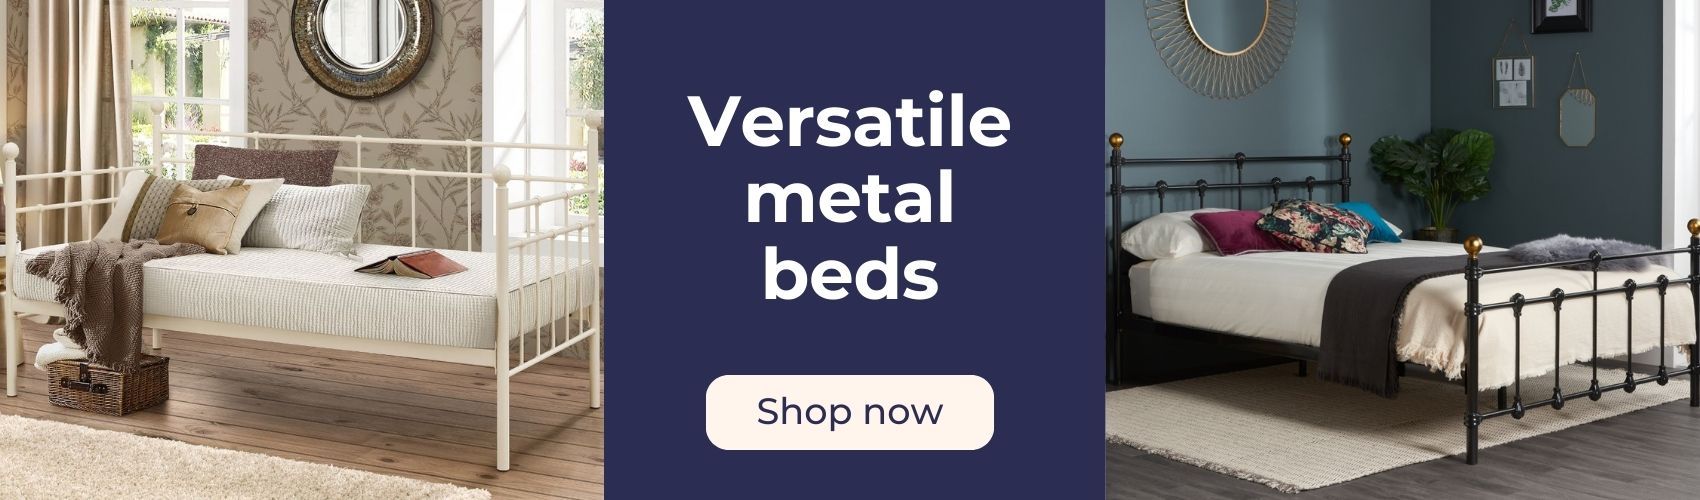 Shop metal beds